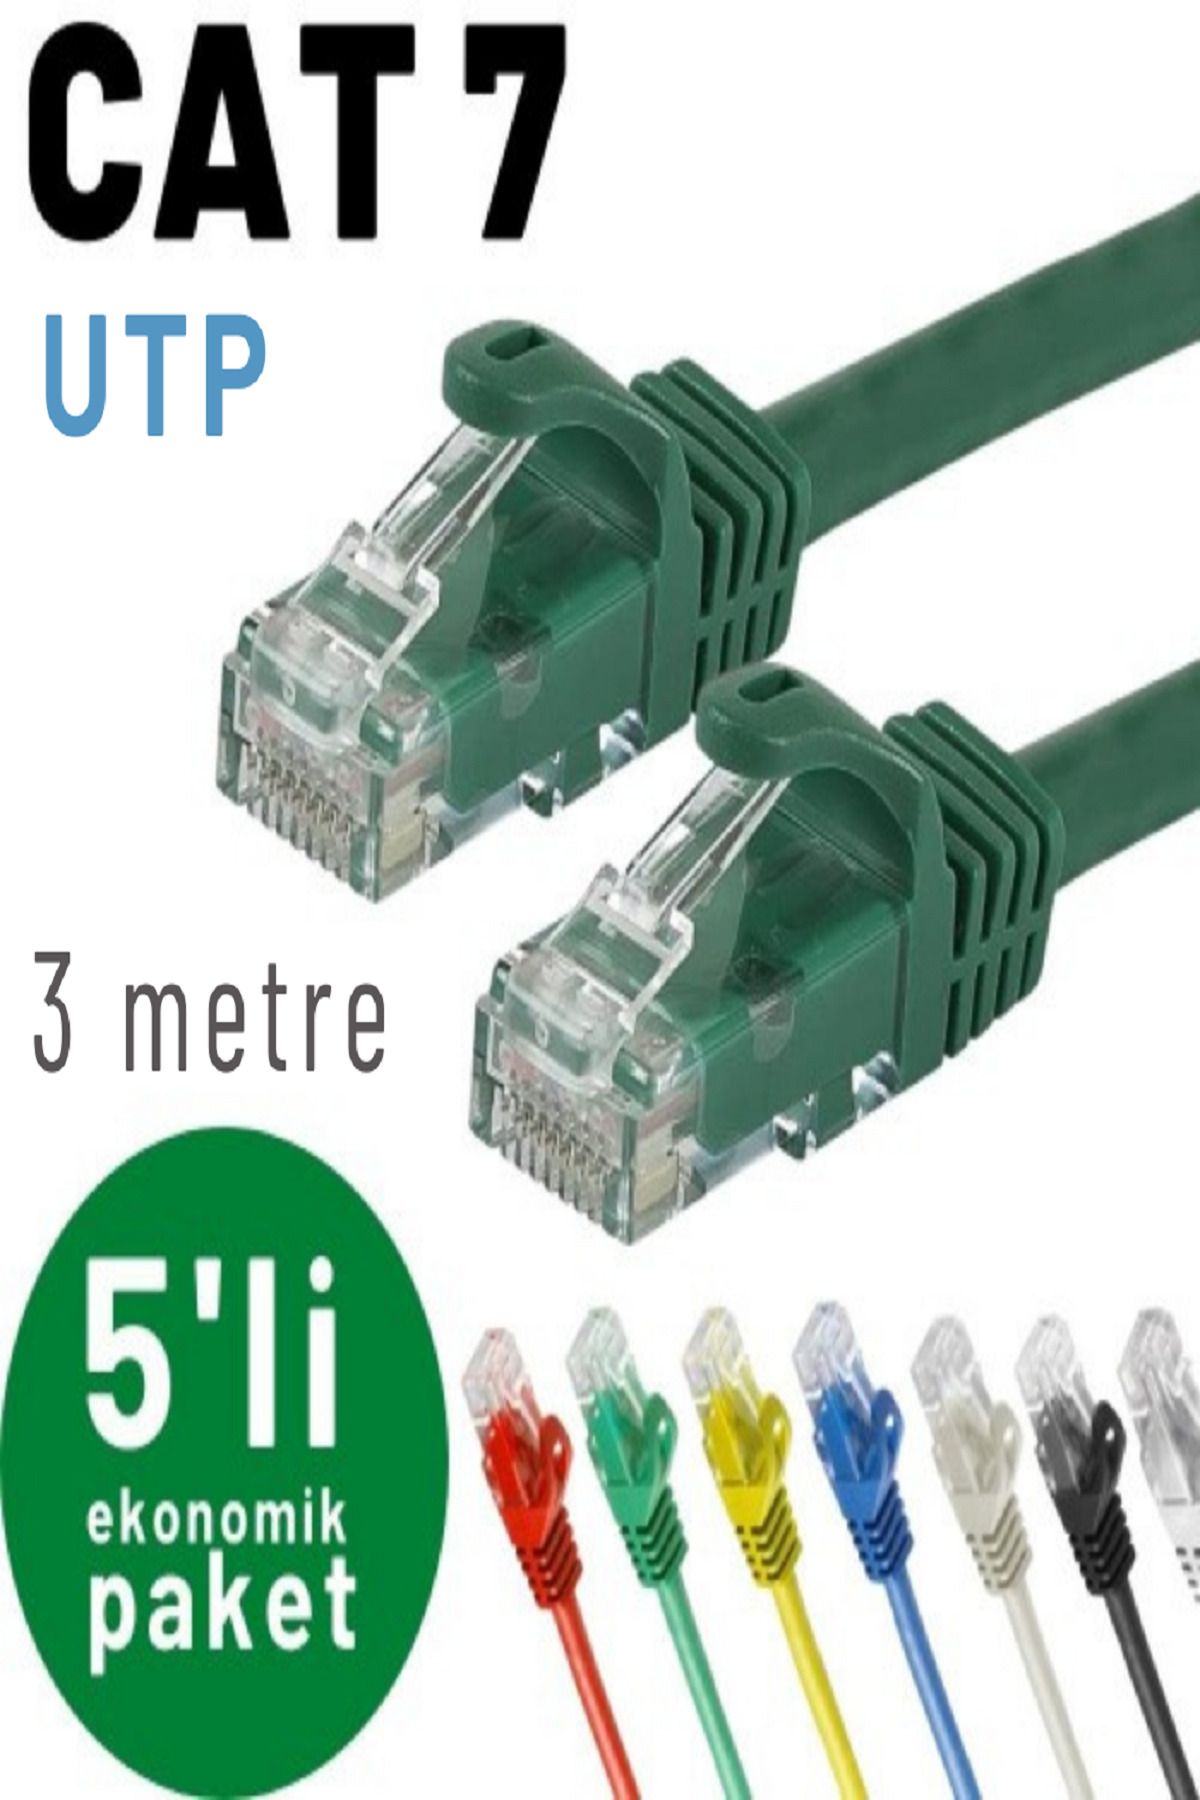 IRENIS 5 Adet 3 Metre Cat7 Utp Kablo Ethernet Network Internet Lan Kablosu, Yeşil